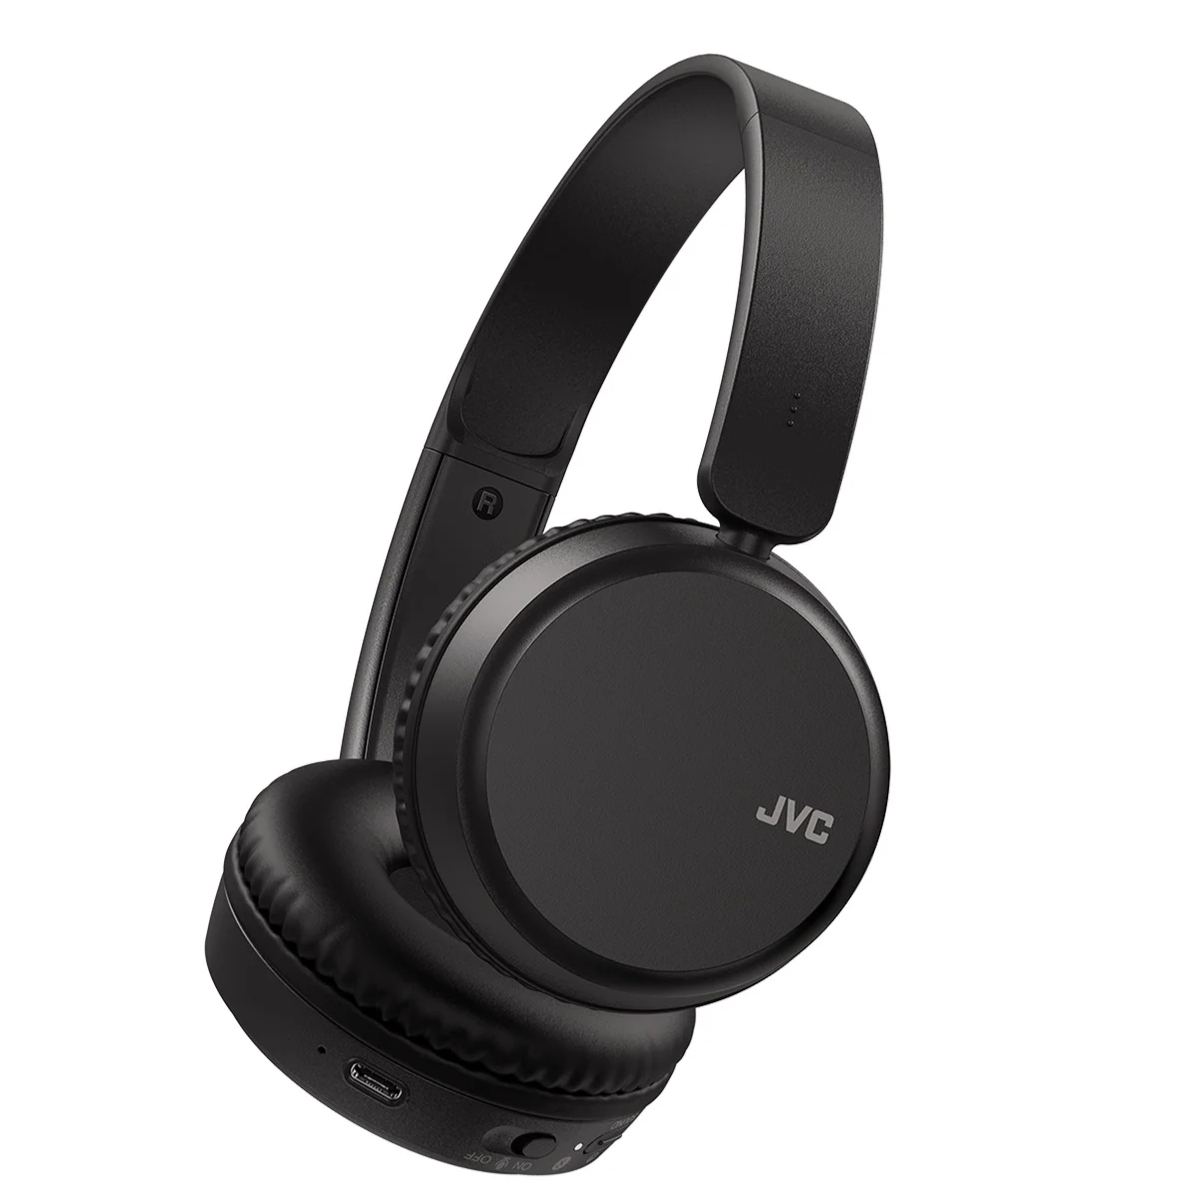  JVC HA-S36W-B Bluetooth slušalice. Uživajte u muzici bez kablova do 35 sati bežičnog slušanja. Uroniti u svoje omiljene pesme bez brige o bateriji.